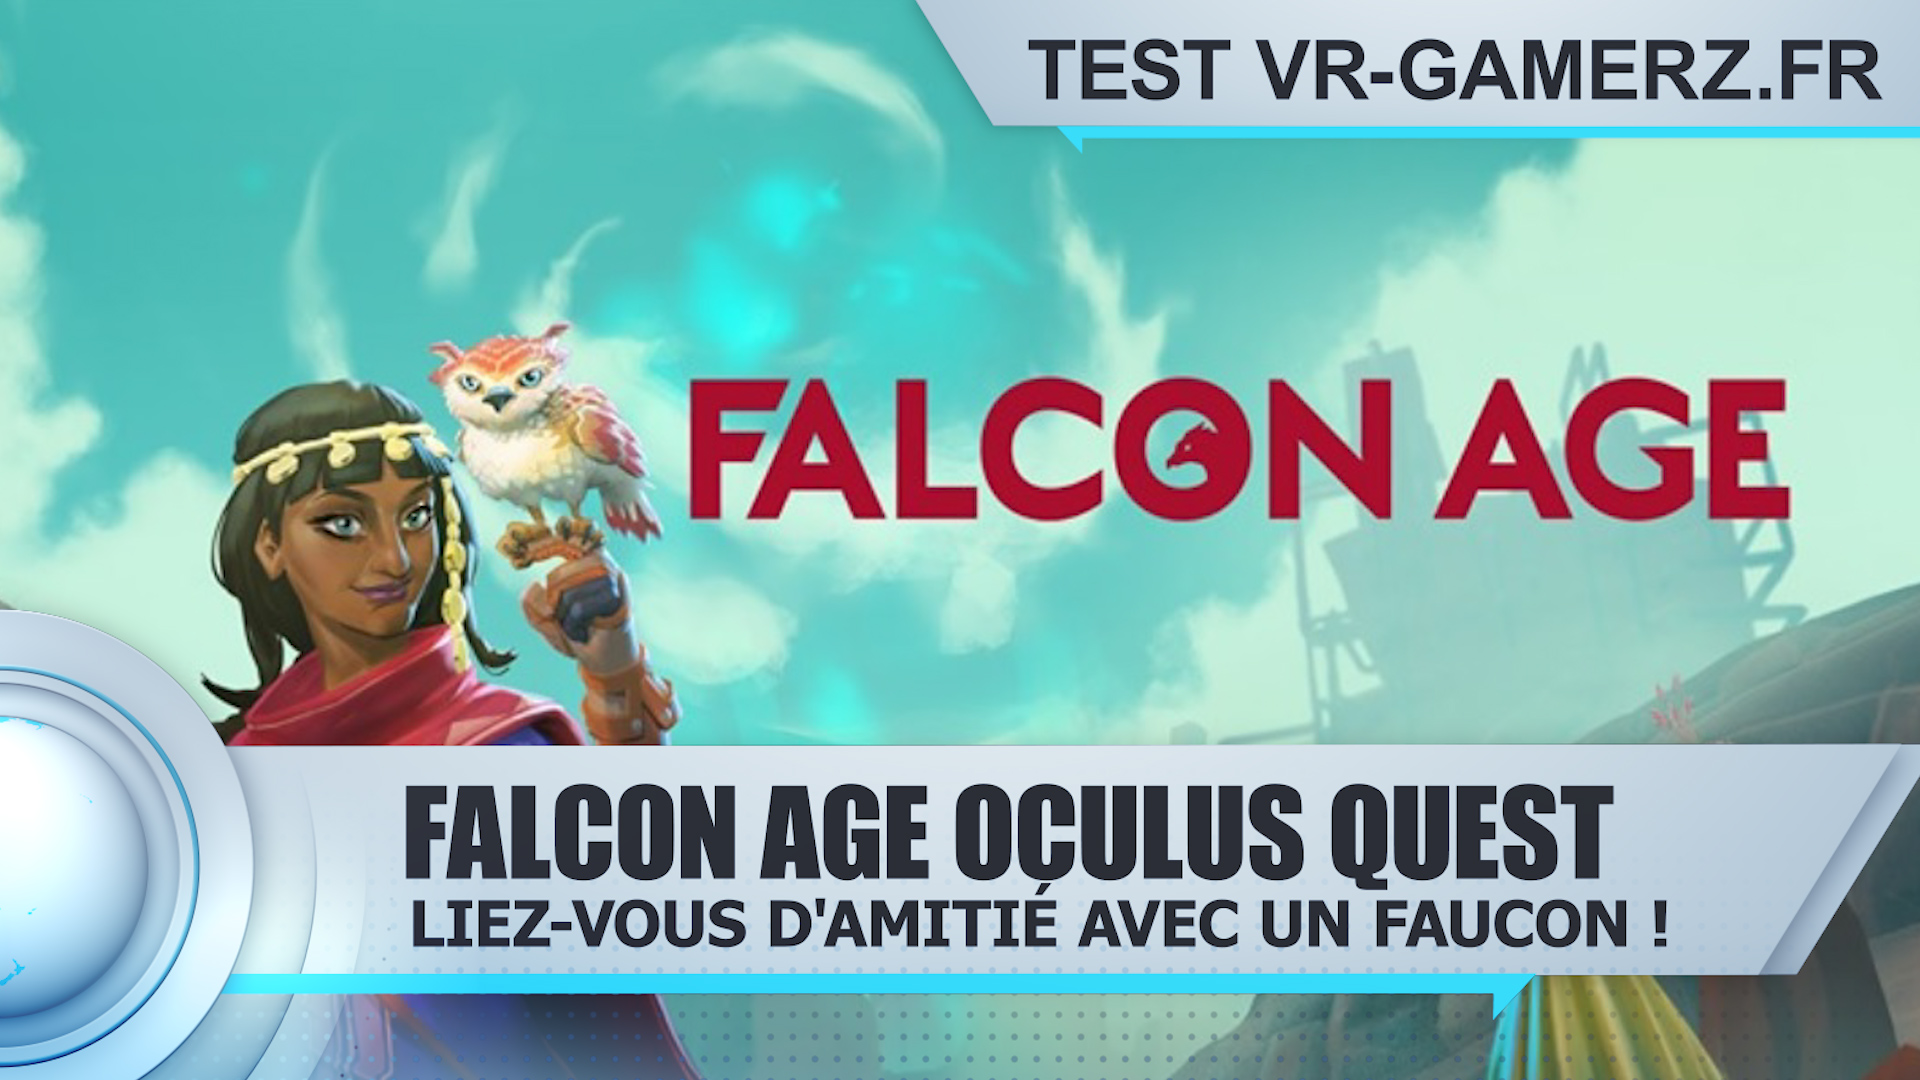 Test de Falcon age sur Oculus quest : Liez-vous d’amitié avec un faucon !